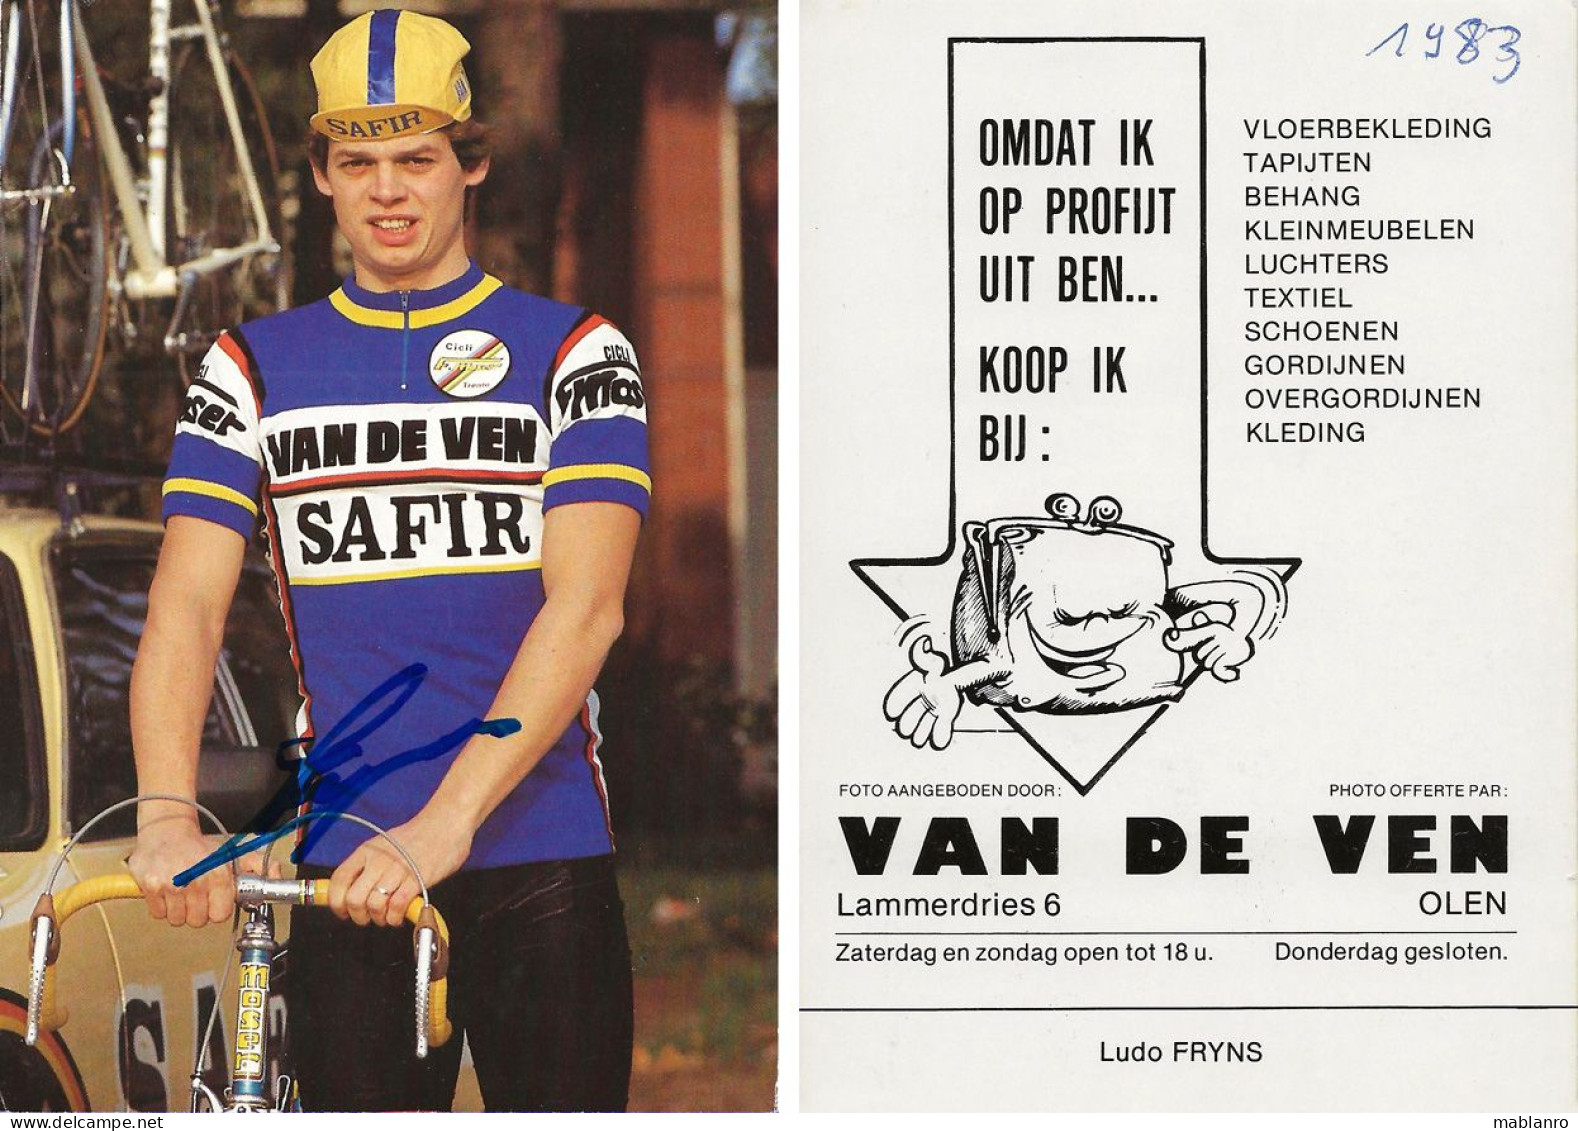 CARTE CYCLISME LUDO FRYNS SIGNEE TEAM SAFIR 1983 - Cyclisme